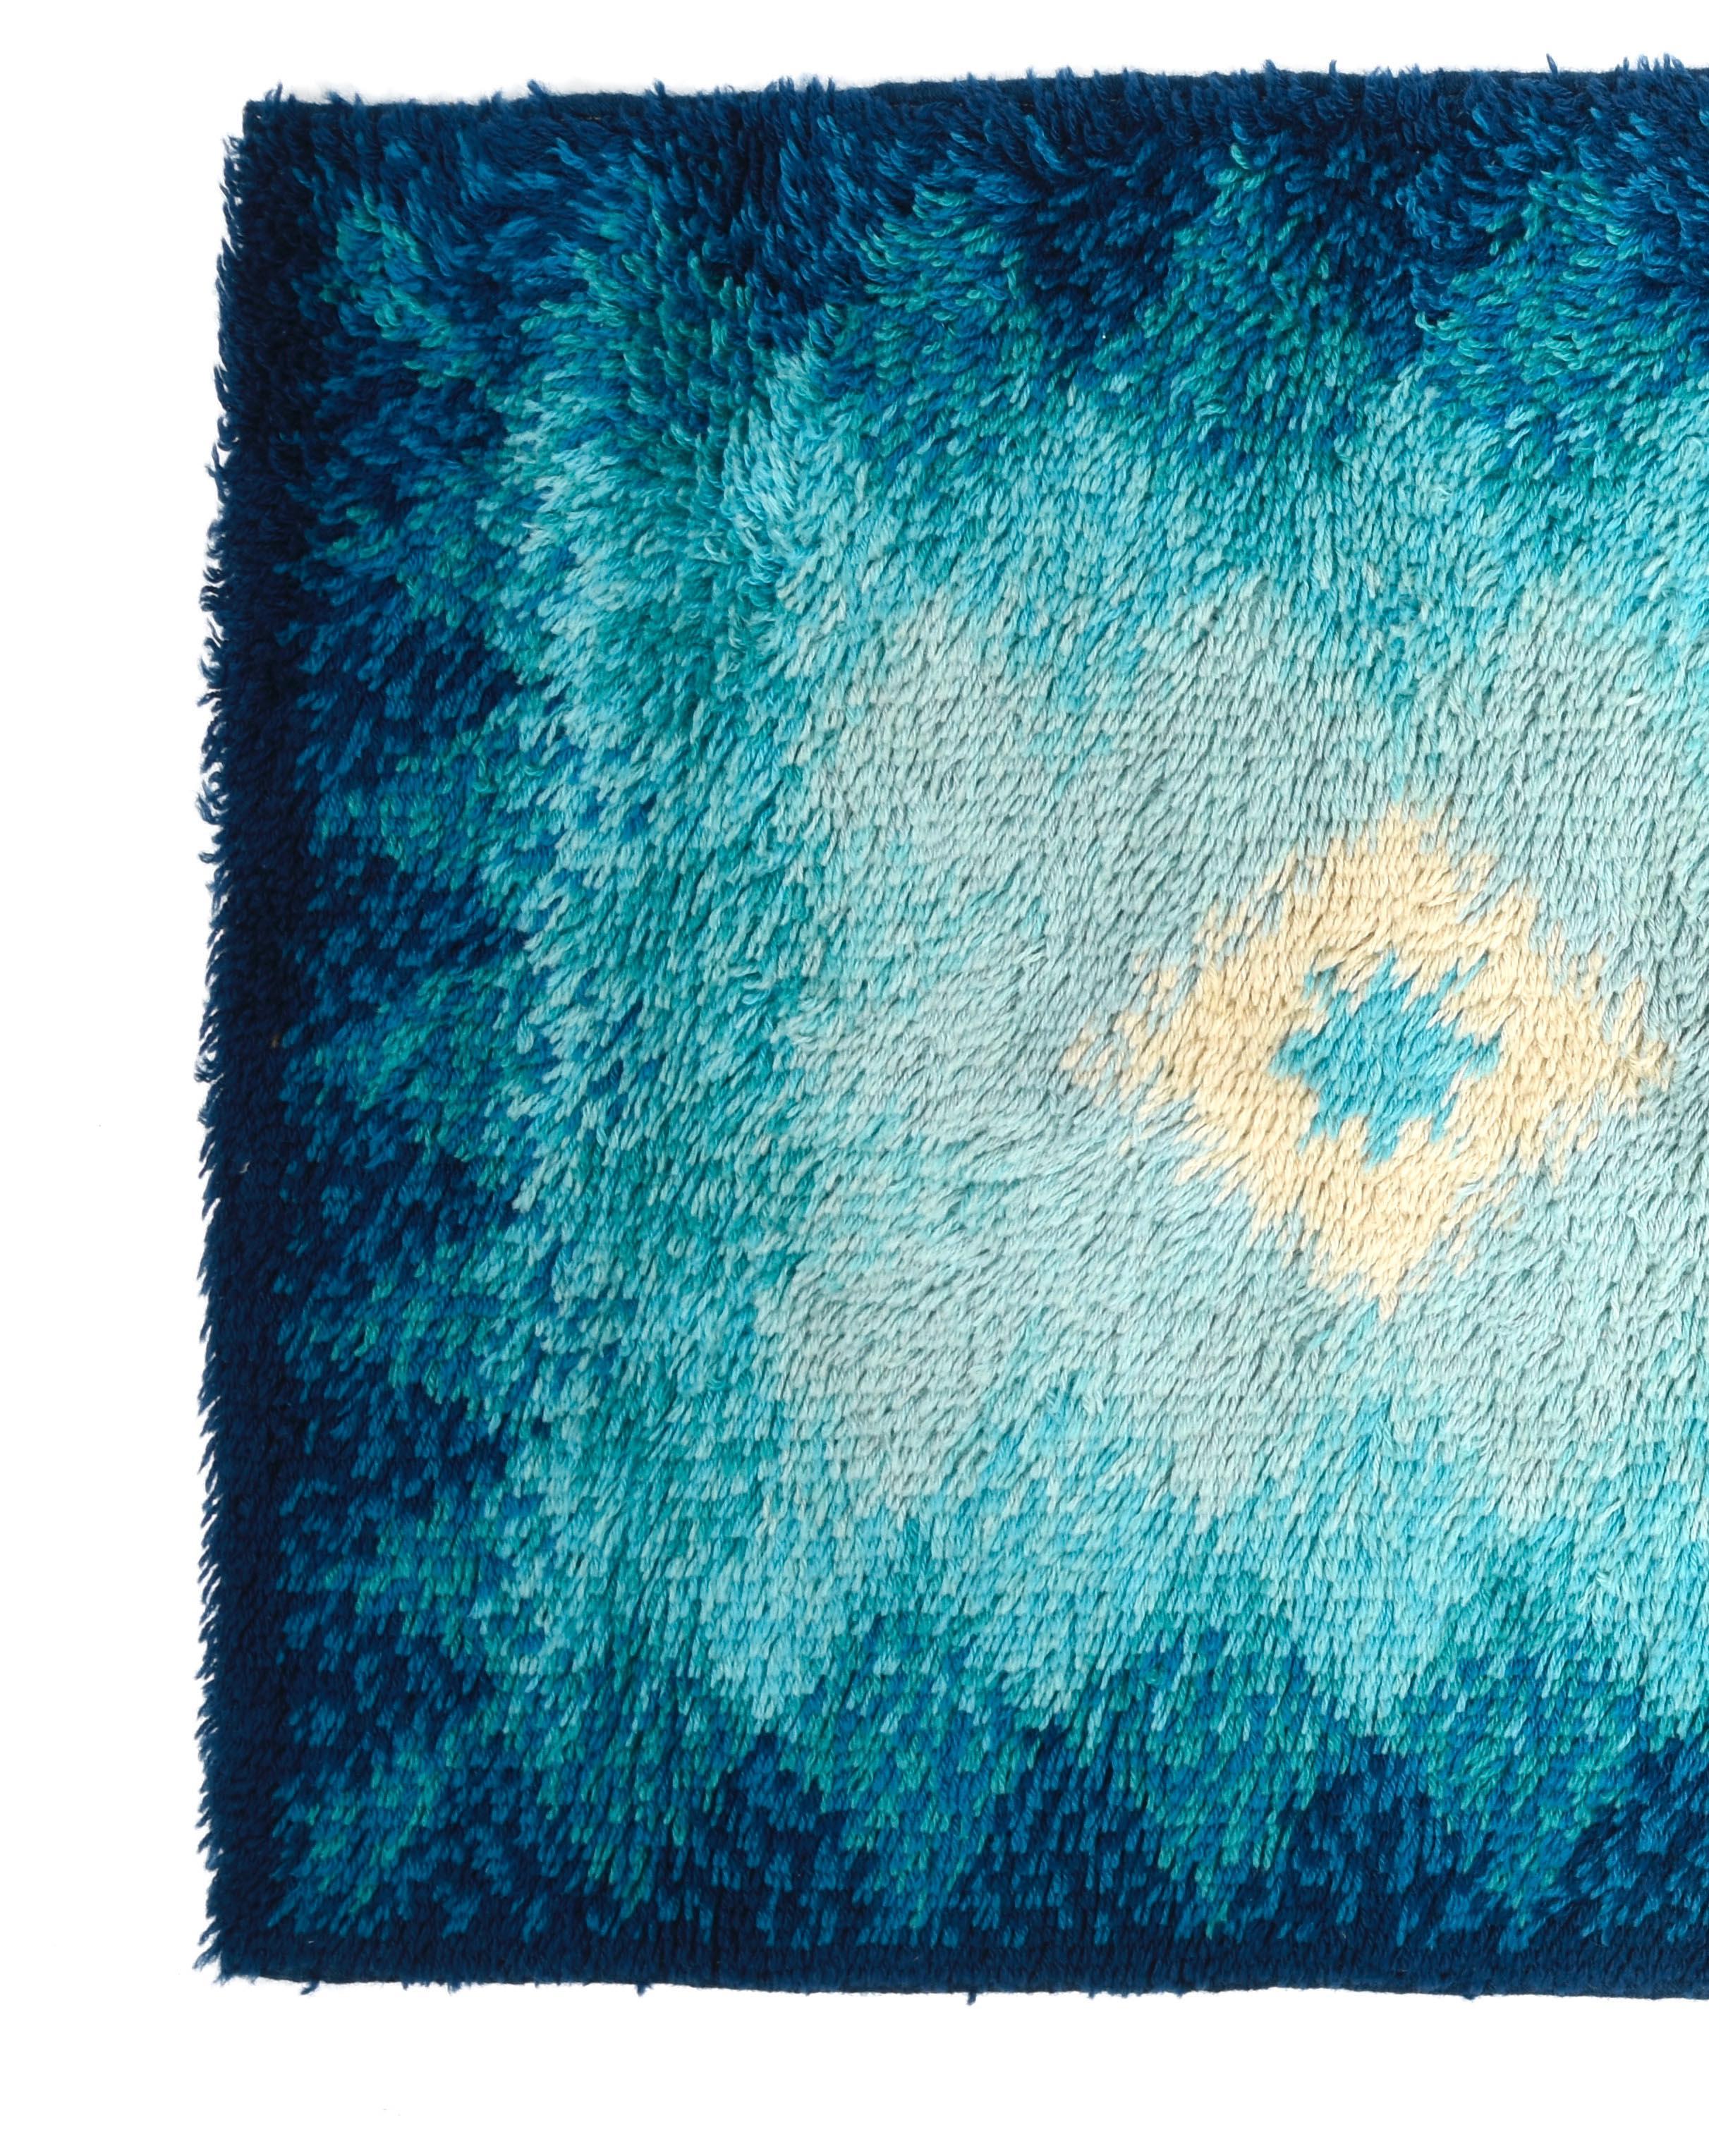 Erstaunlich Mitte des Jahrhunderts blau und weiß reiner Schurwollteppich. Dieser wunderschöne Teppich wurde in den 1970er Jahren von Samit Borgosesia in Italien hergestellt.

Dieser Artikel ist vollständig aus reinster neuseeländischer Schurwolle